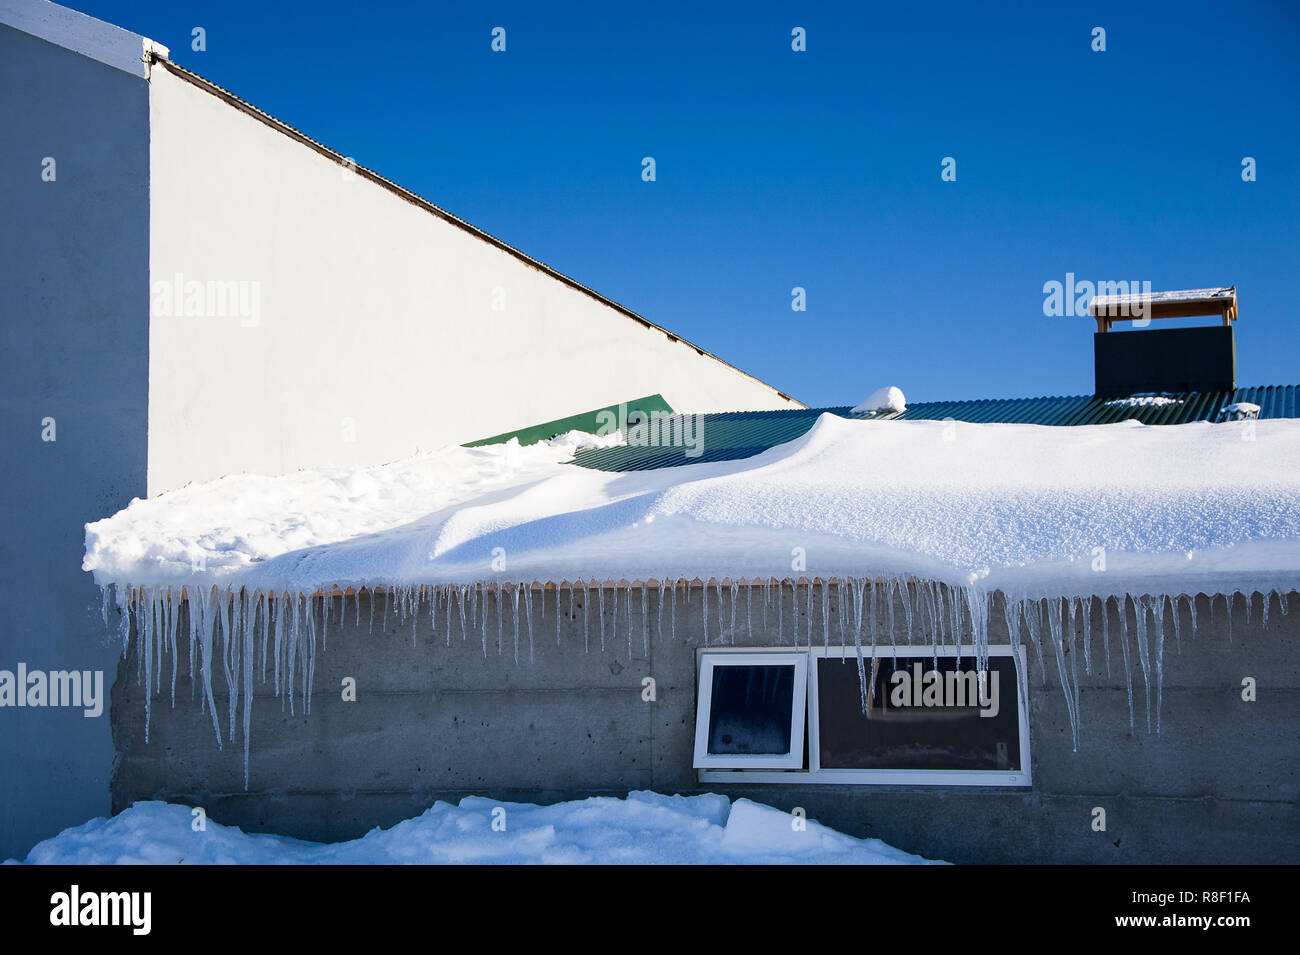 Myvatn, Island. Gebäude fast durch tiefe Schneeverwehungen abgedeckt. Eiszapfen hängen von der Dachterrasse, strahlend blauen Himmel Hintergrund Stockfoto